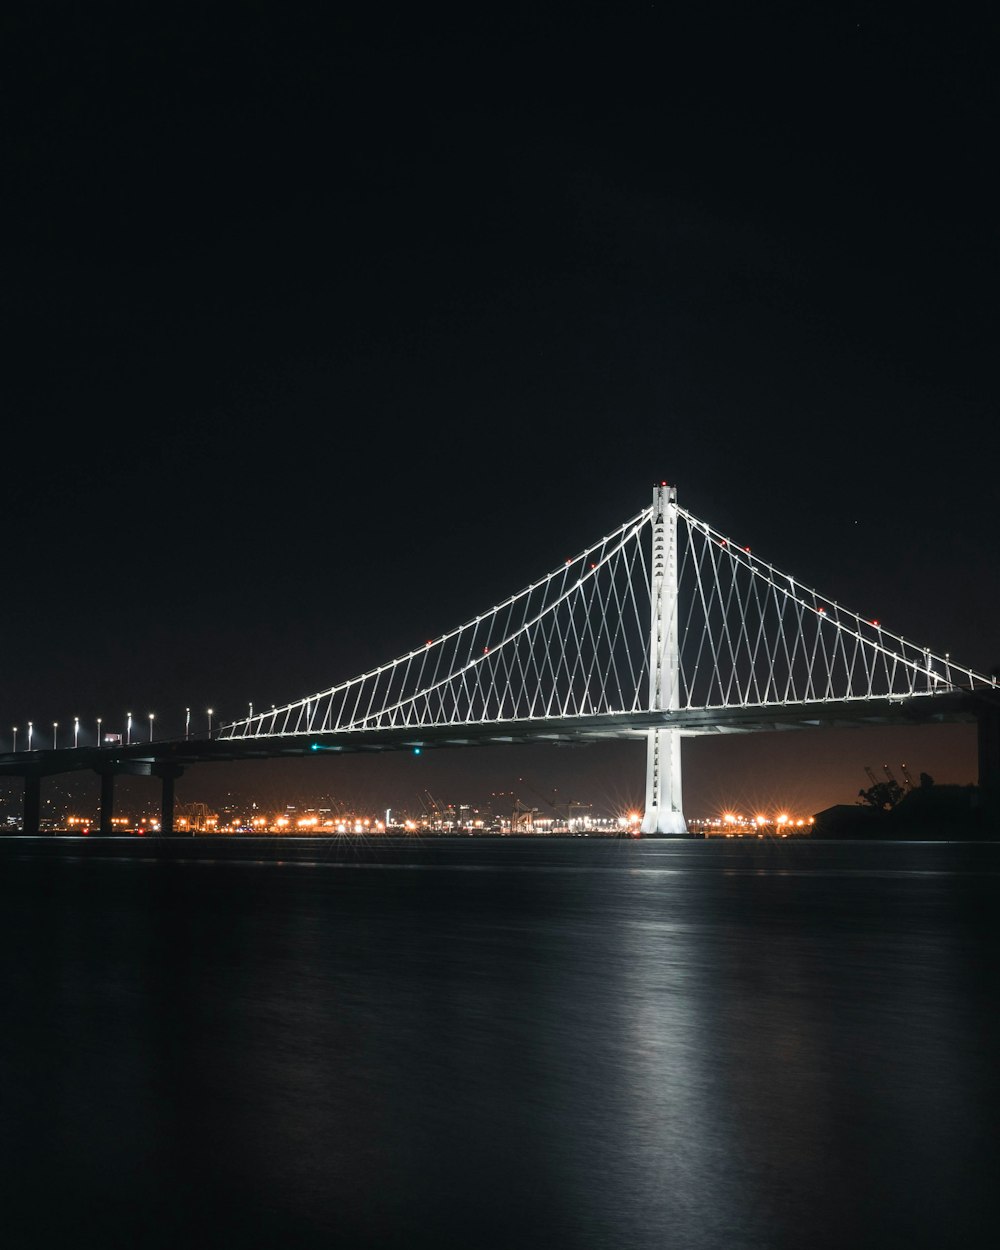 grey suspension bridge during nighttime